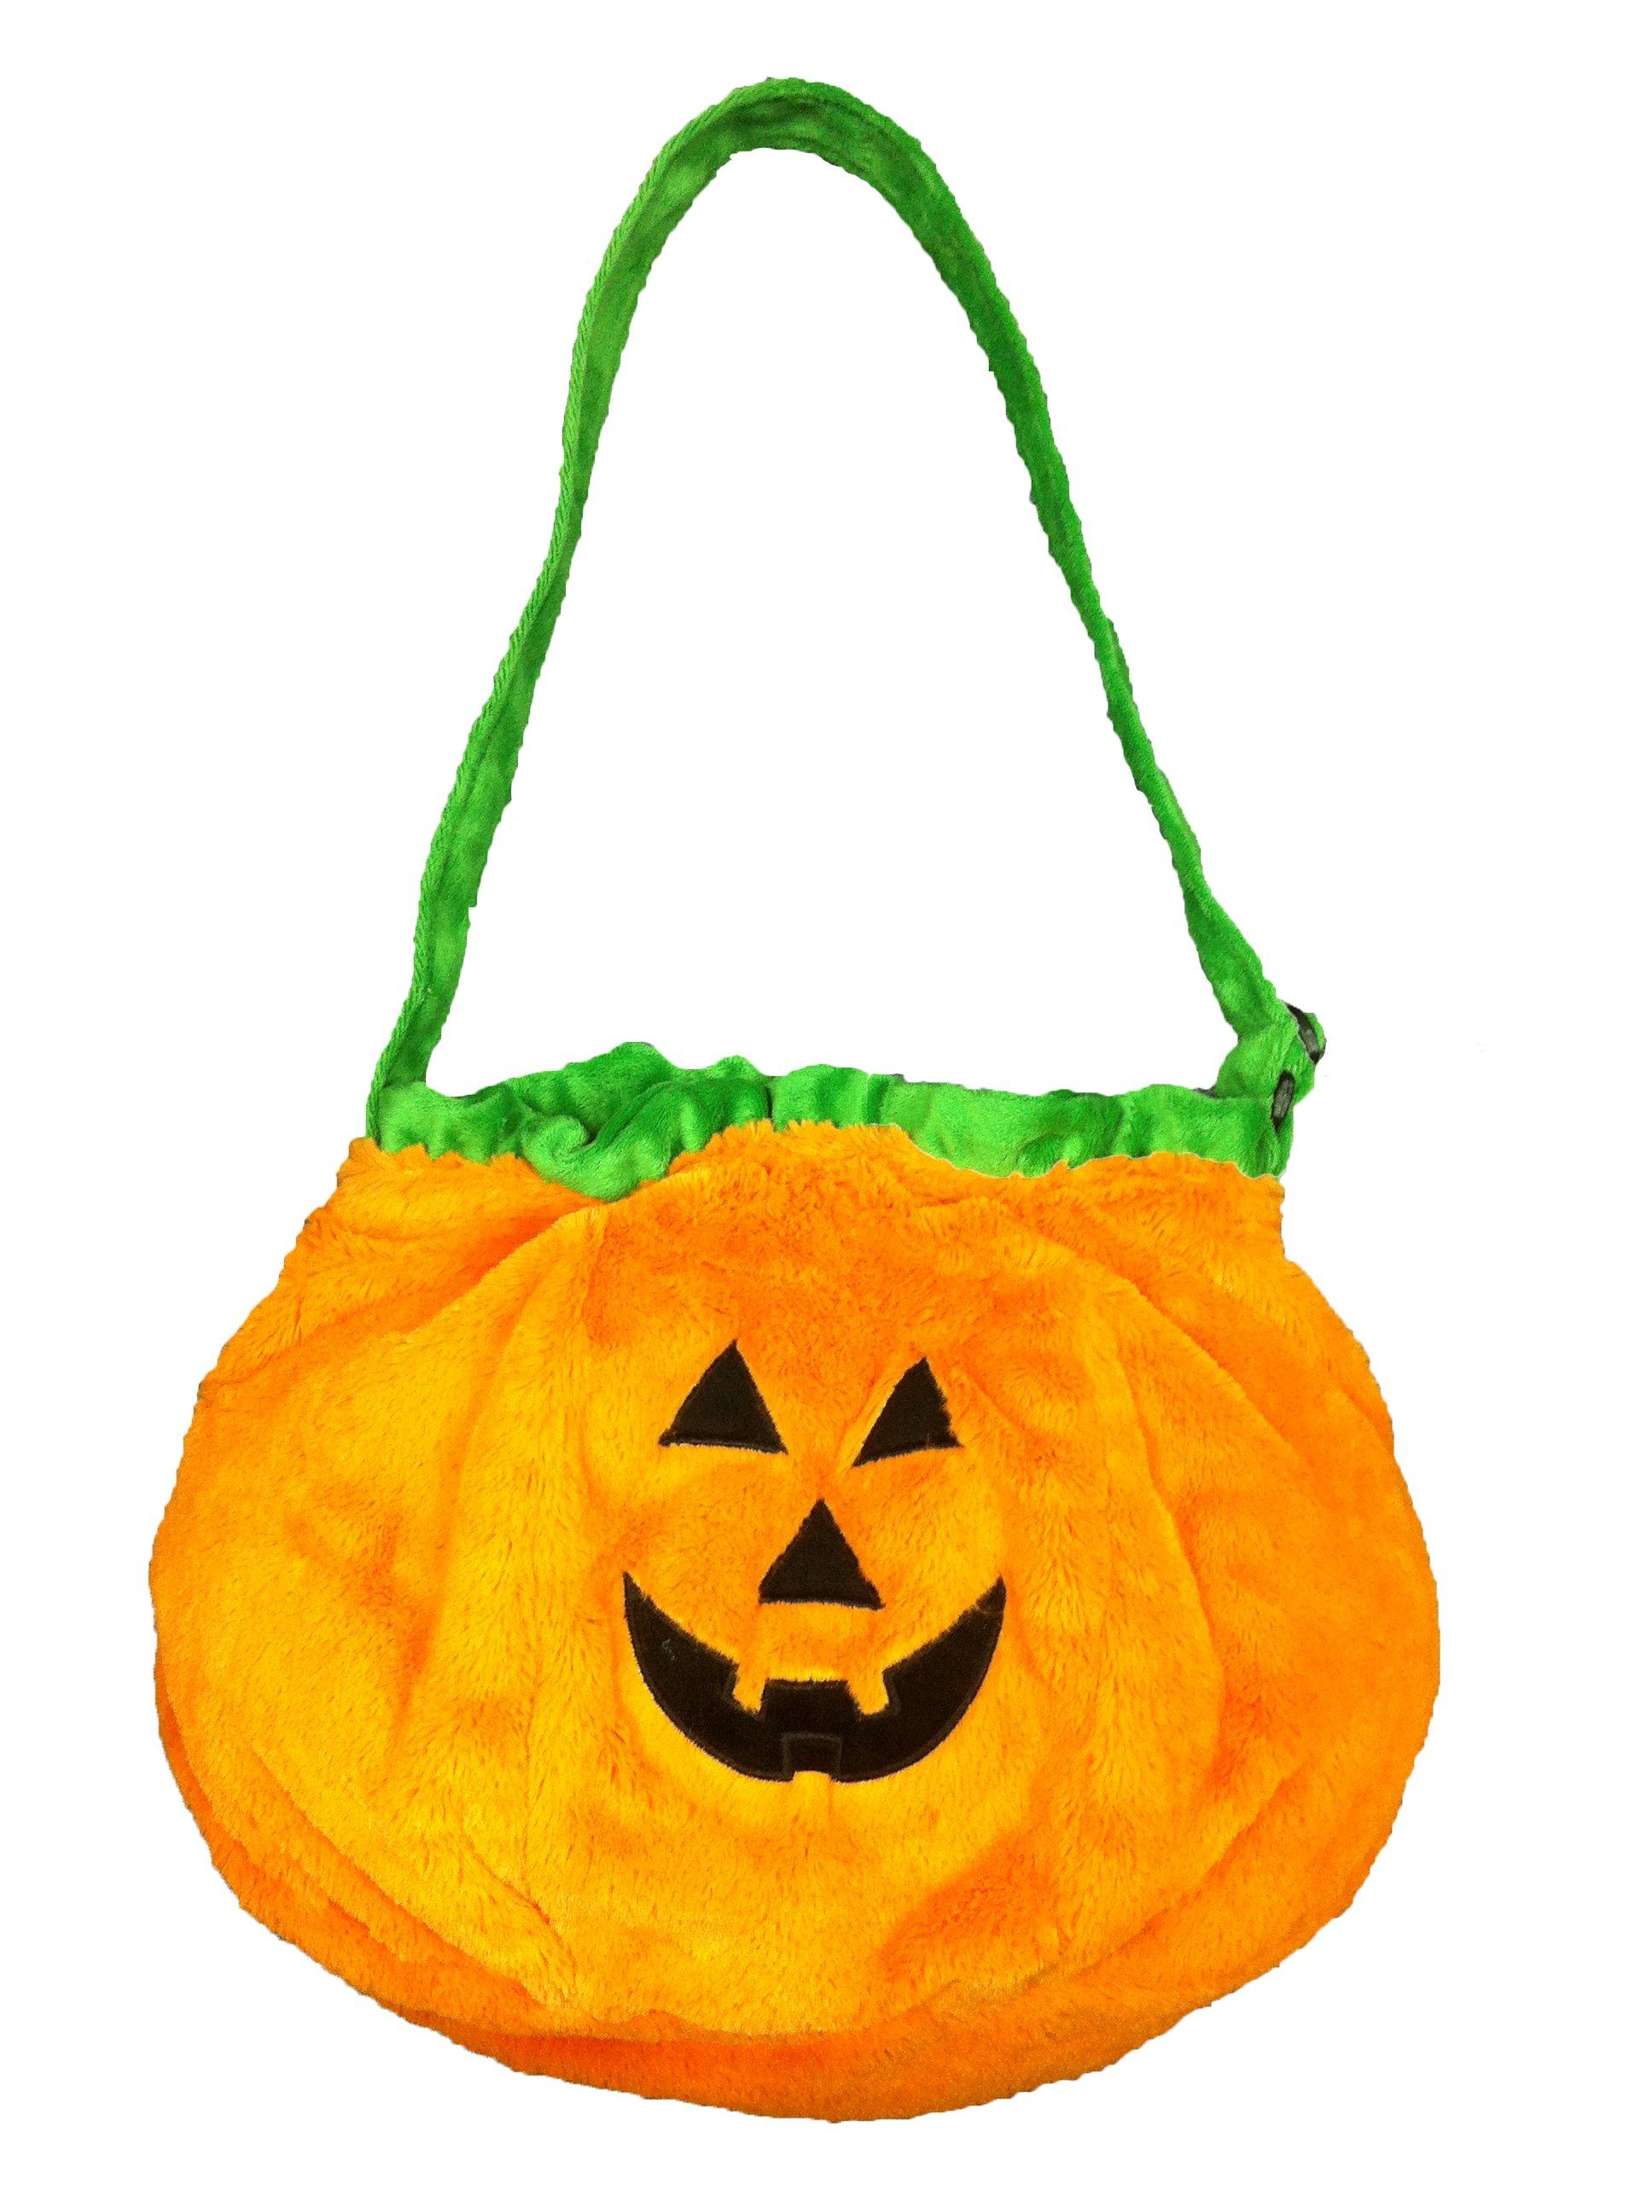 NA Halloween Pumpkin Bag Orange Orange